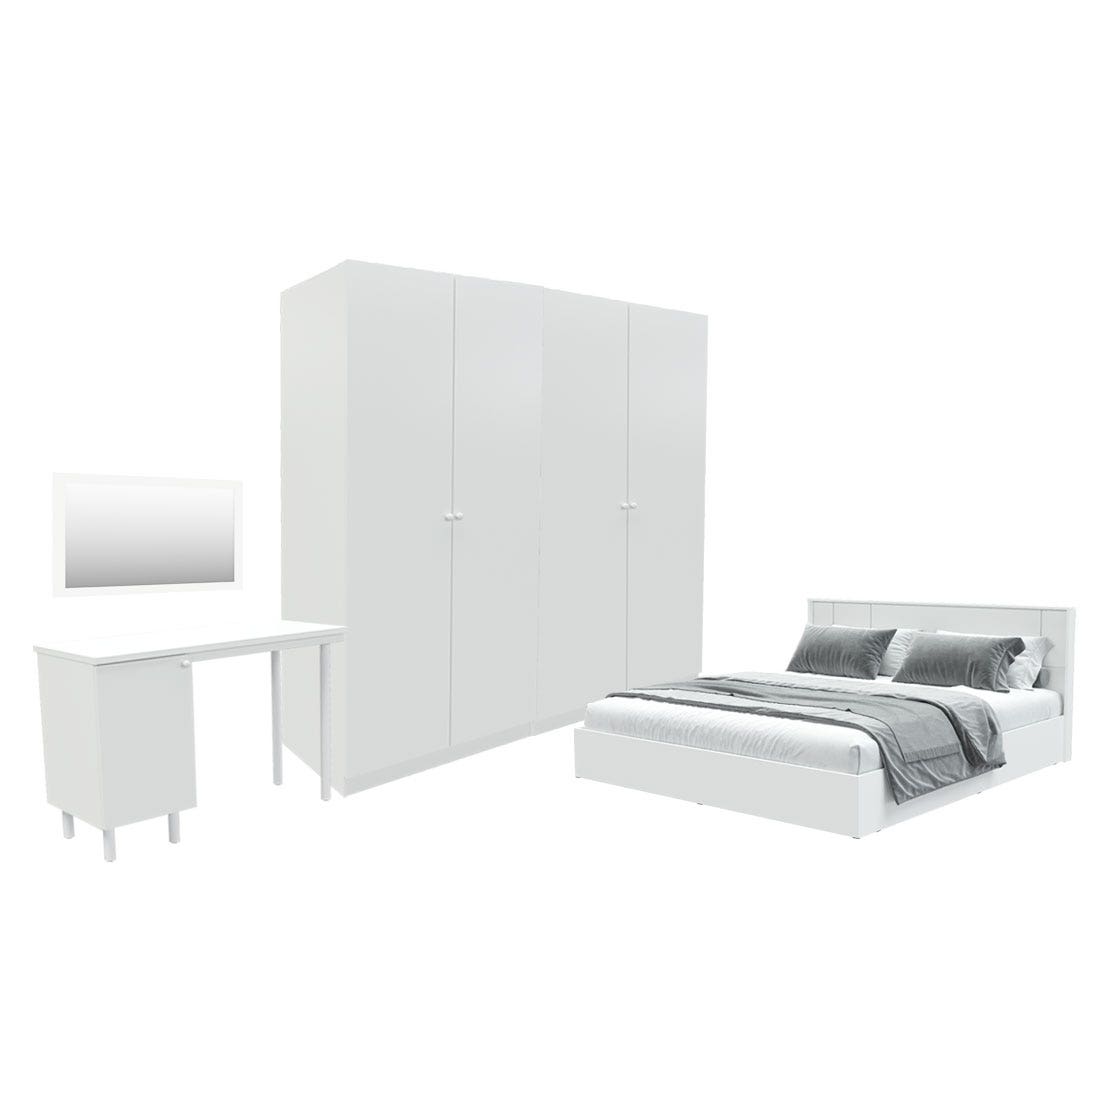 ชุดห้องนอน ขนาด 6 ฟุต รุ่น Pearliz และ ตู้ Blox ขนาด 200 ซม. พร้อมโต๊ะทำงาน สีขาว มิดกรอส01